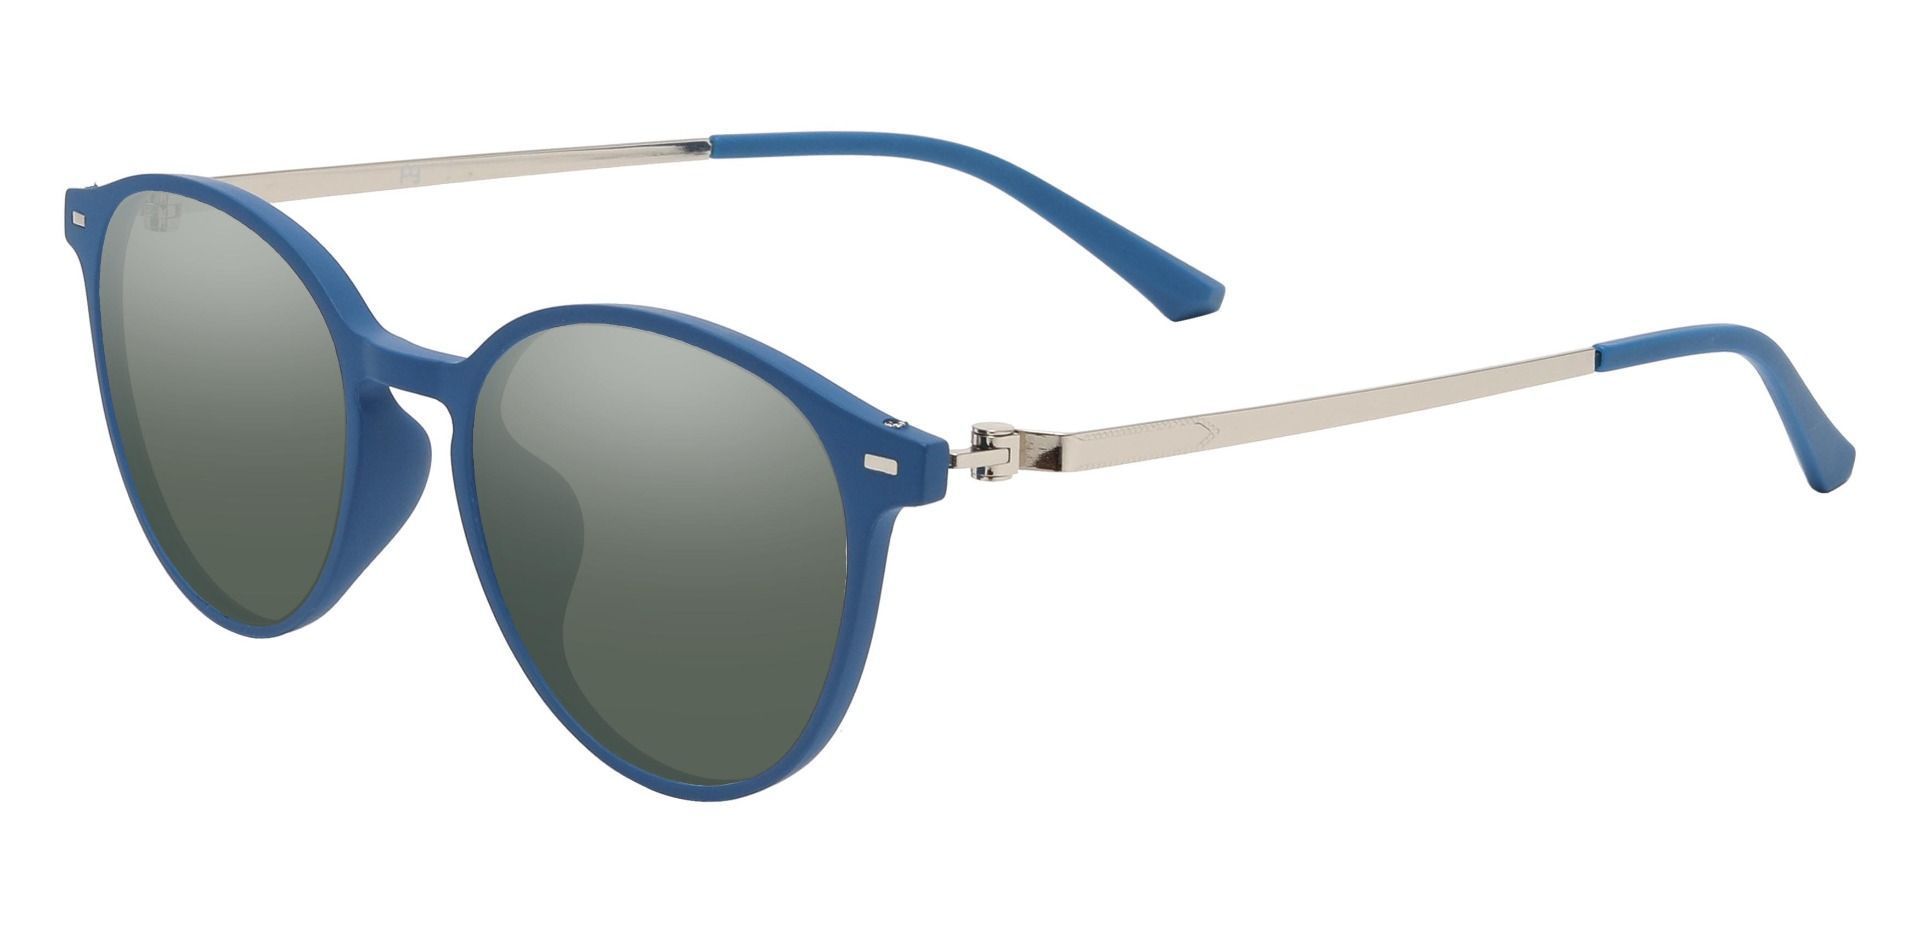 Springer Round Progressive Sunglasses - Blue Frame With Green Lenses